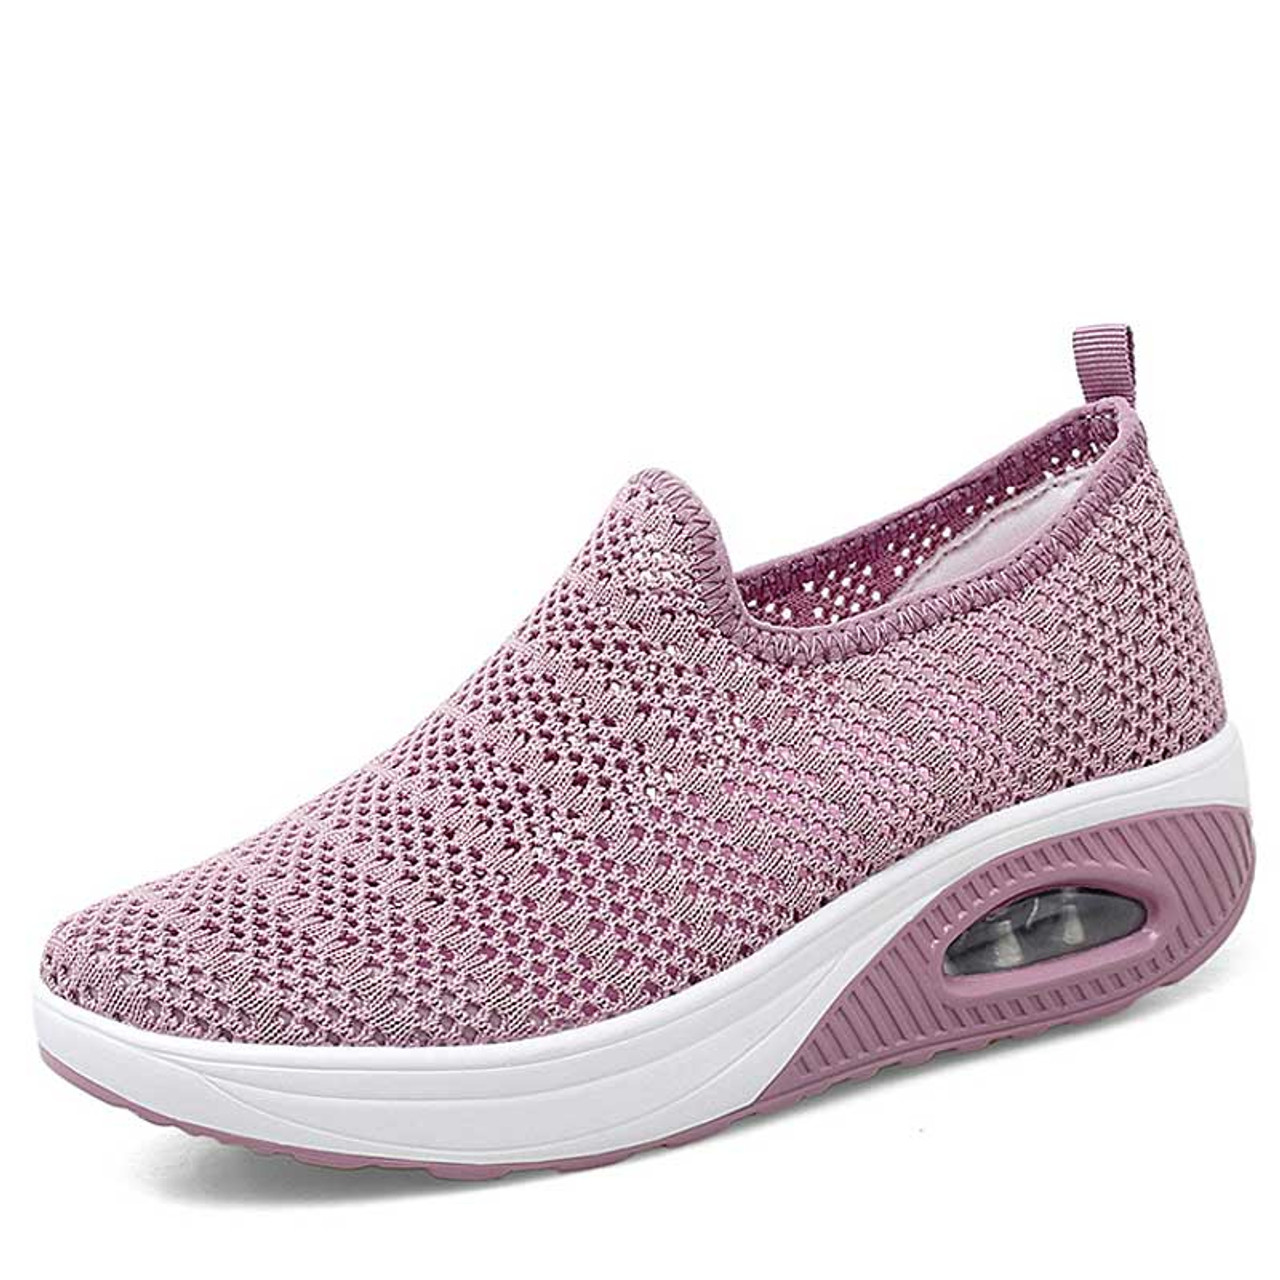 Pink flyknit hollow out slip on rocker bottom sneaker | Womens rocker ...